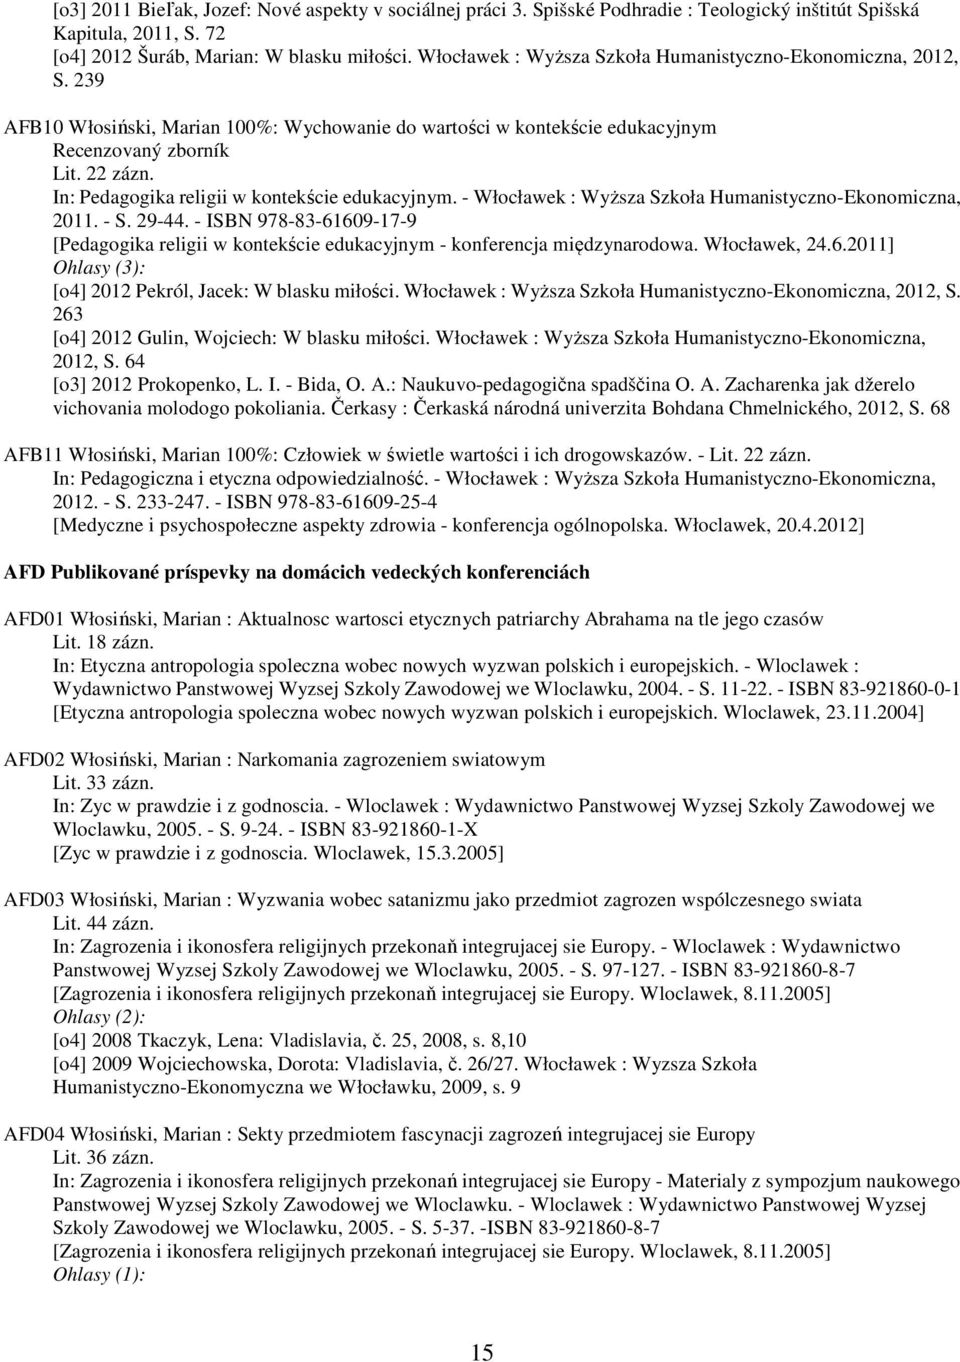 In: Pedagogika religii w kontekście edukacyjnym. - Włocławek : Wyższa Szkoła Humanistyczno-Ekonomiczna, 2011. - S. 29-44.